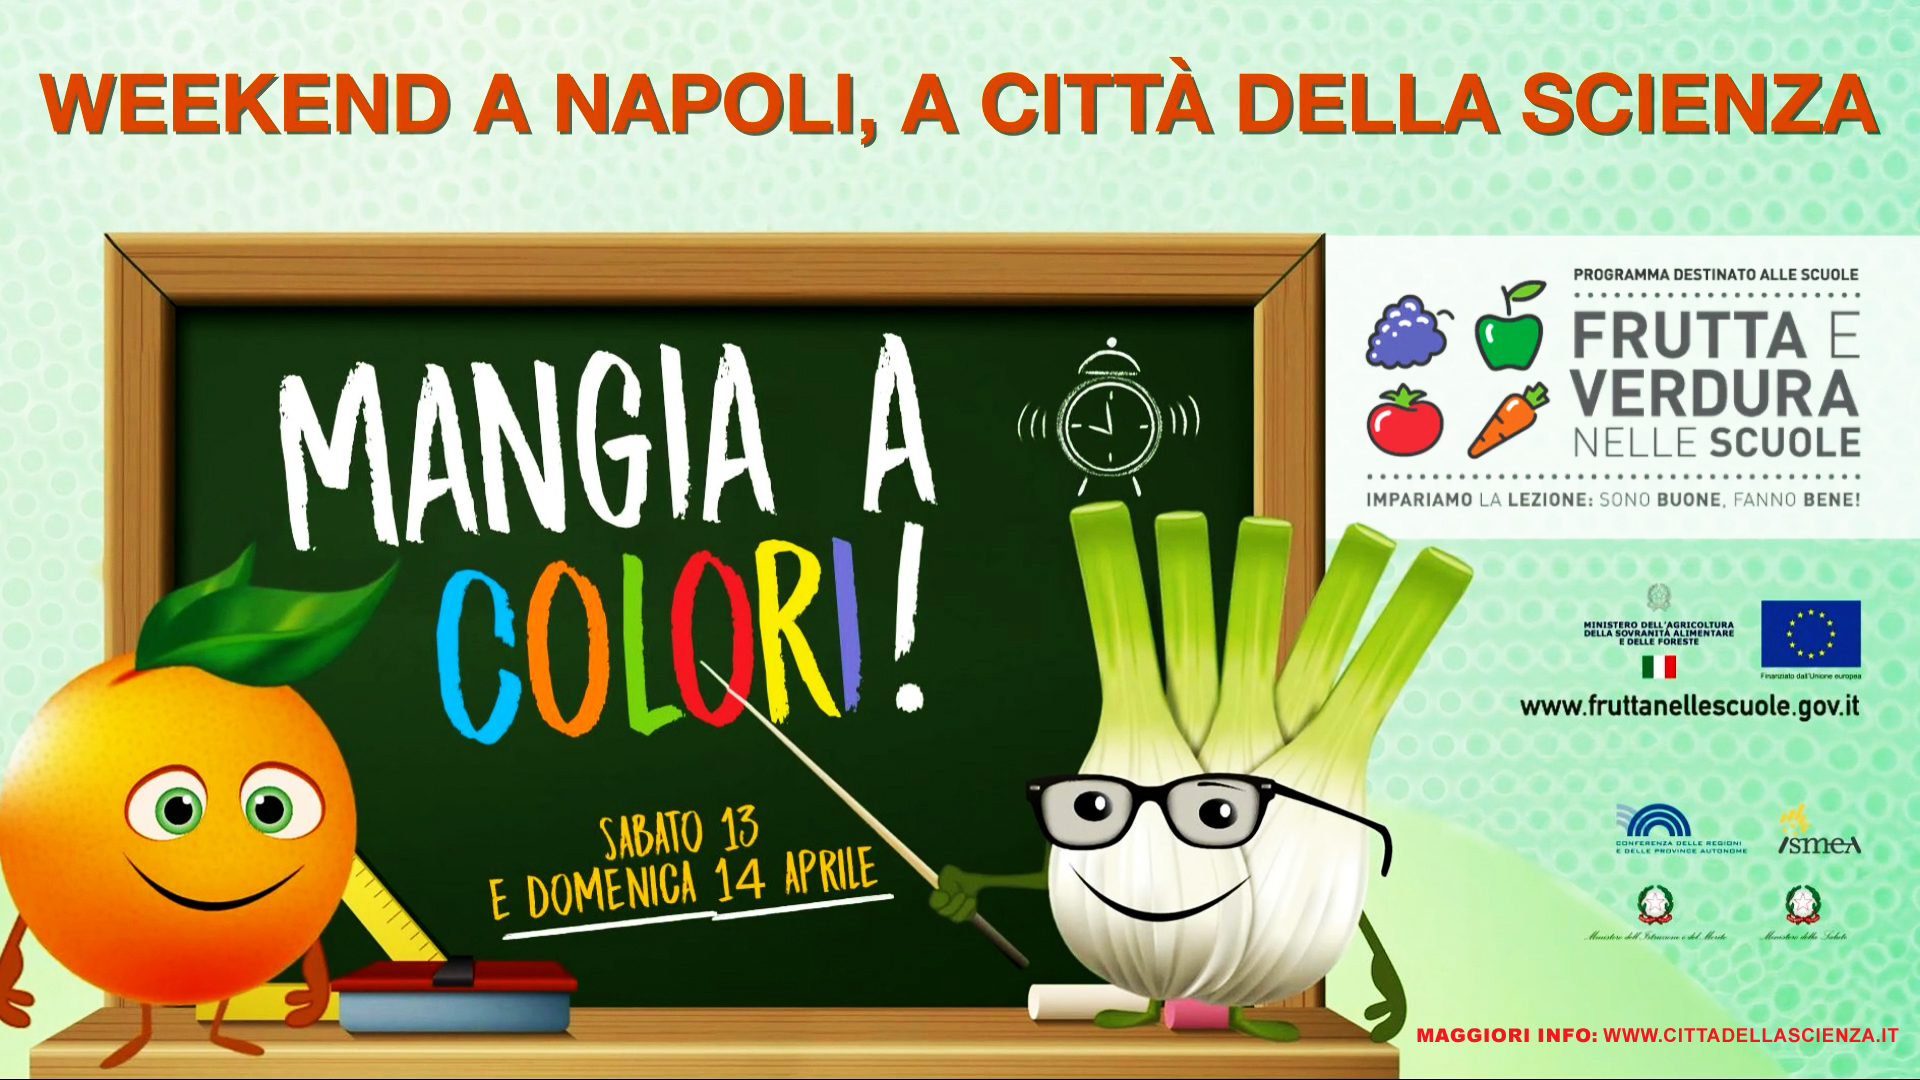 Città della Scienza, un weekend per mangiare a colori: arriva il programma 'Frutta e verdure nelle scuole'